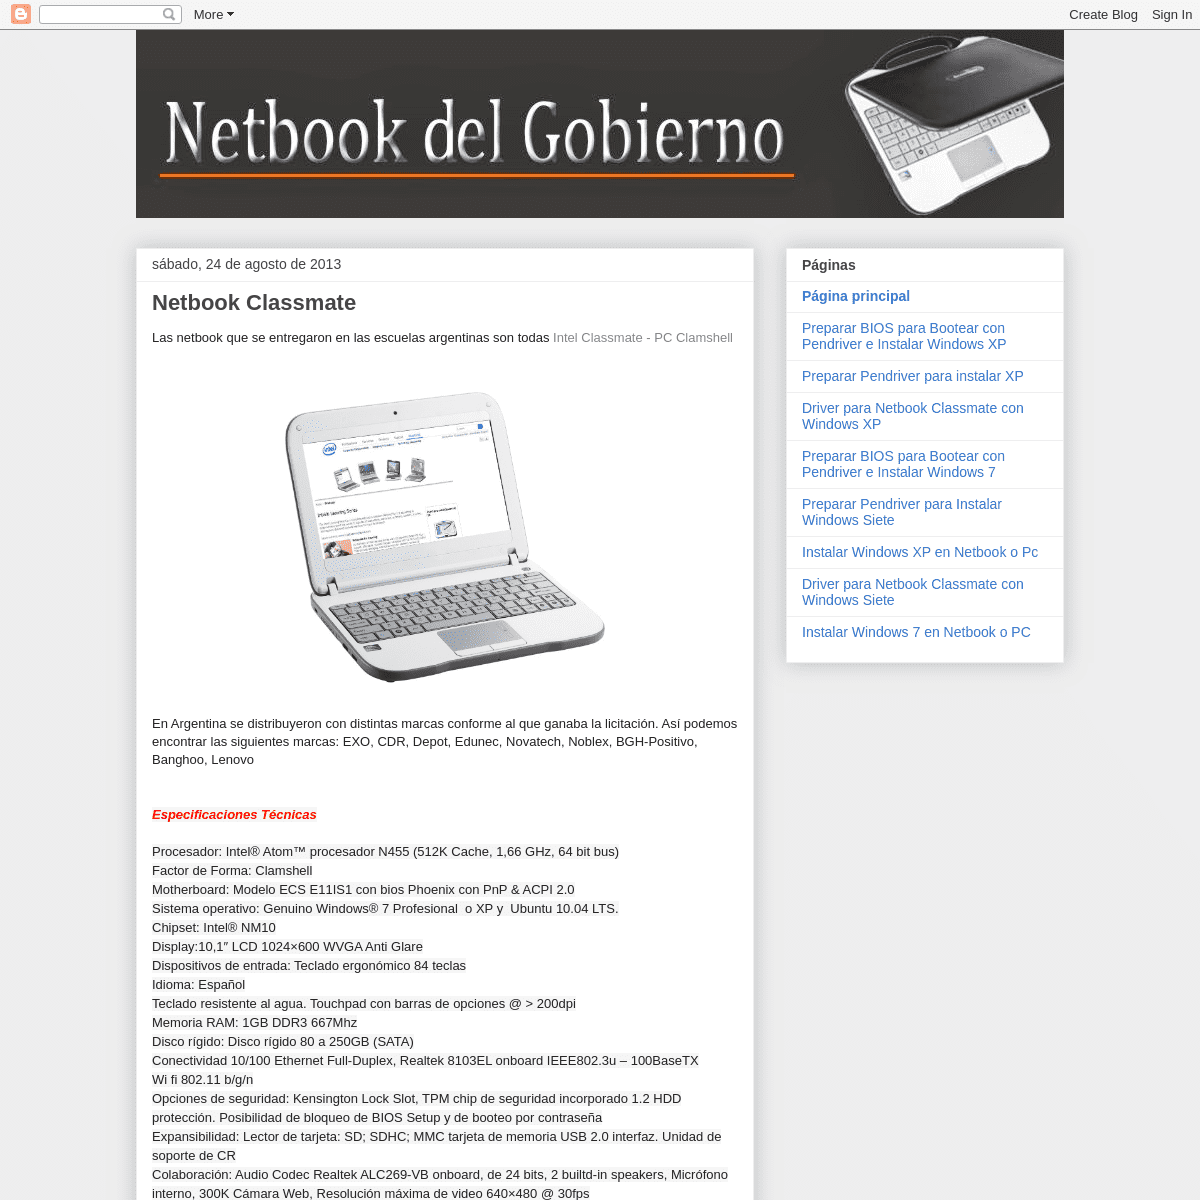 A complete backup of netbookdelgobierno.blogspot.com